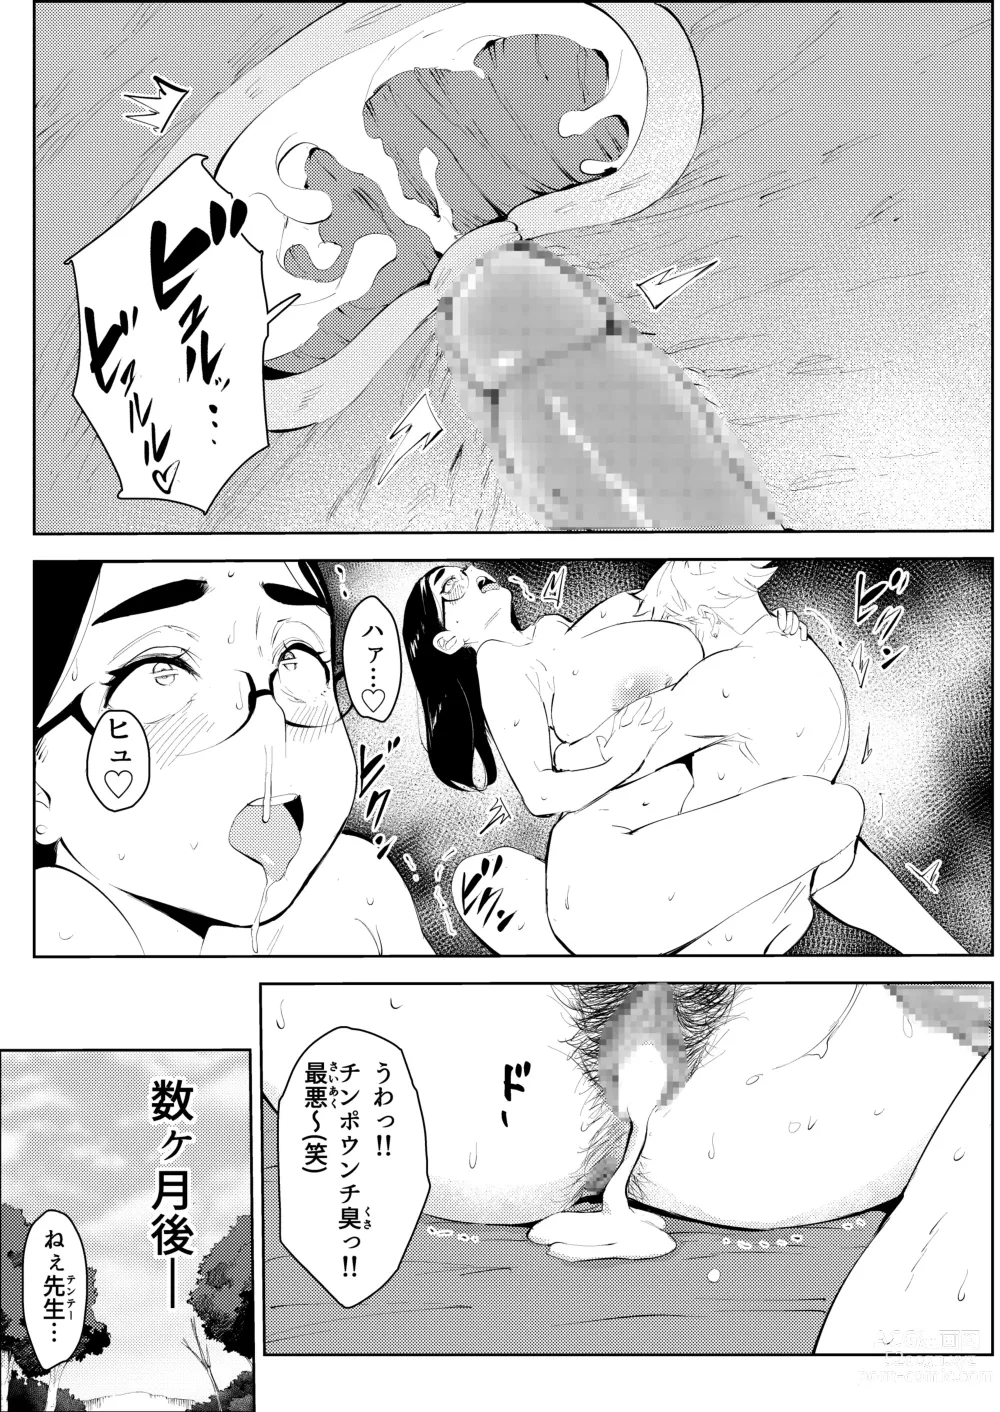 Page 43 of doujinshi 30-Sai hoiku-shi kon katsu pātī de deatta yarimoku ni jinsei dainashi ni sa reru